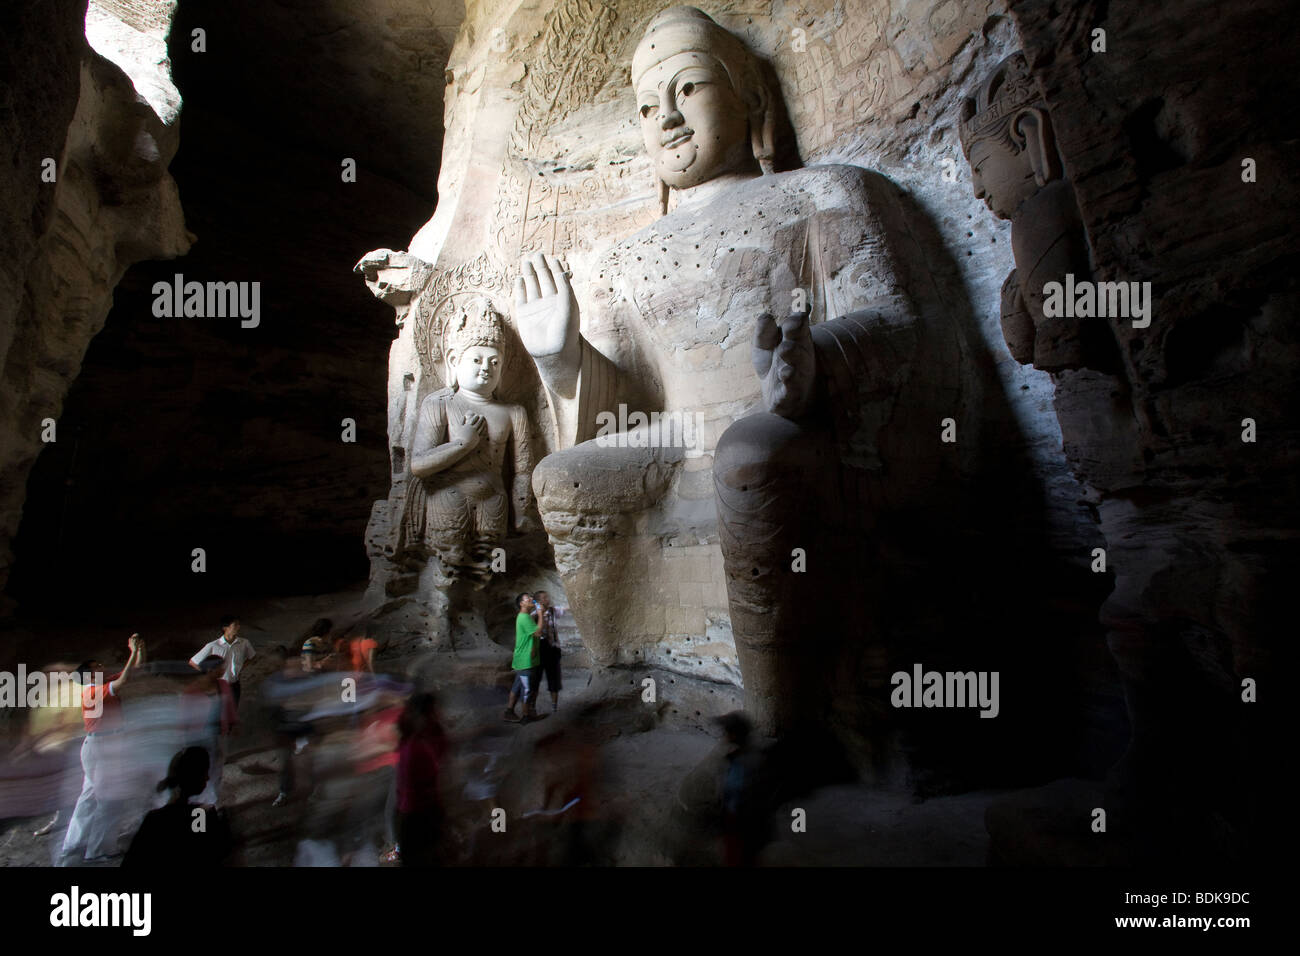 Yungang Shiku buddhistischen Höhlen Komplex, 16km westlich von Datong, erstrecken Statuen, geschnitzt im 5. Jahrhundert n. Chr. waren sich über mehr als 1 km. Stockfoto